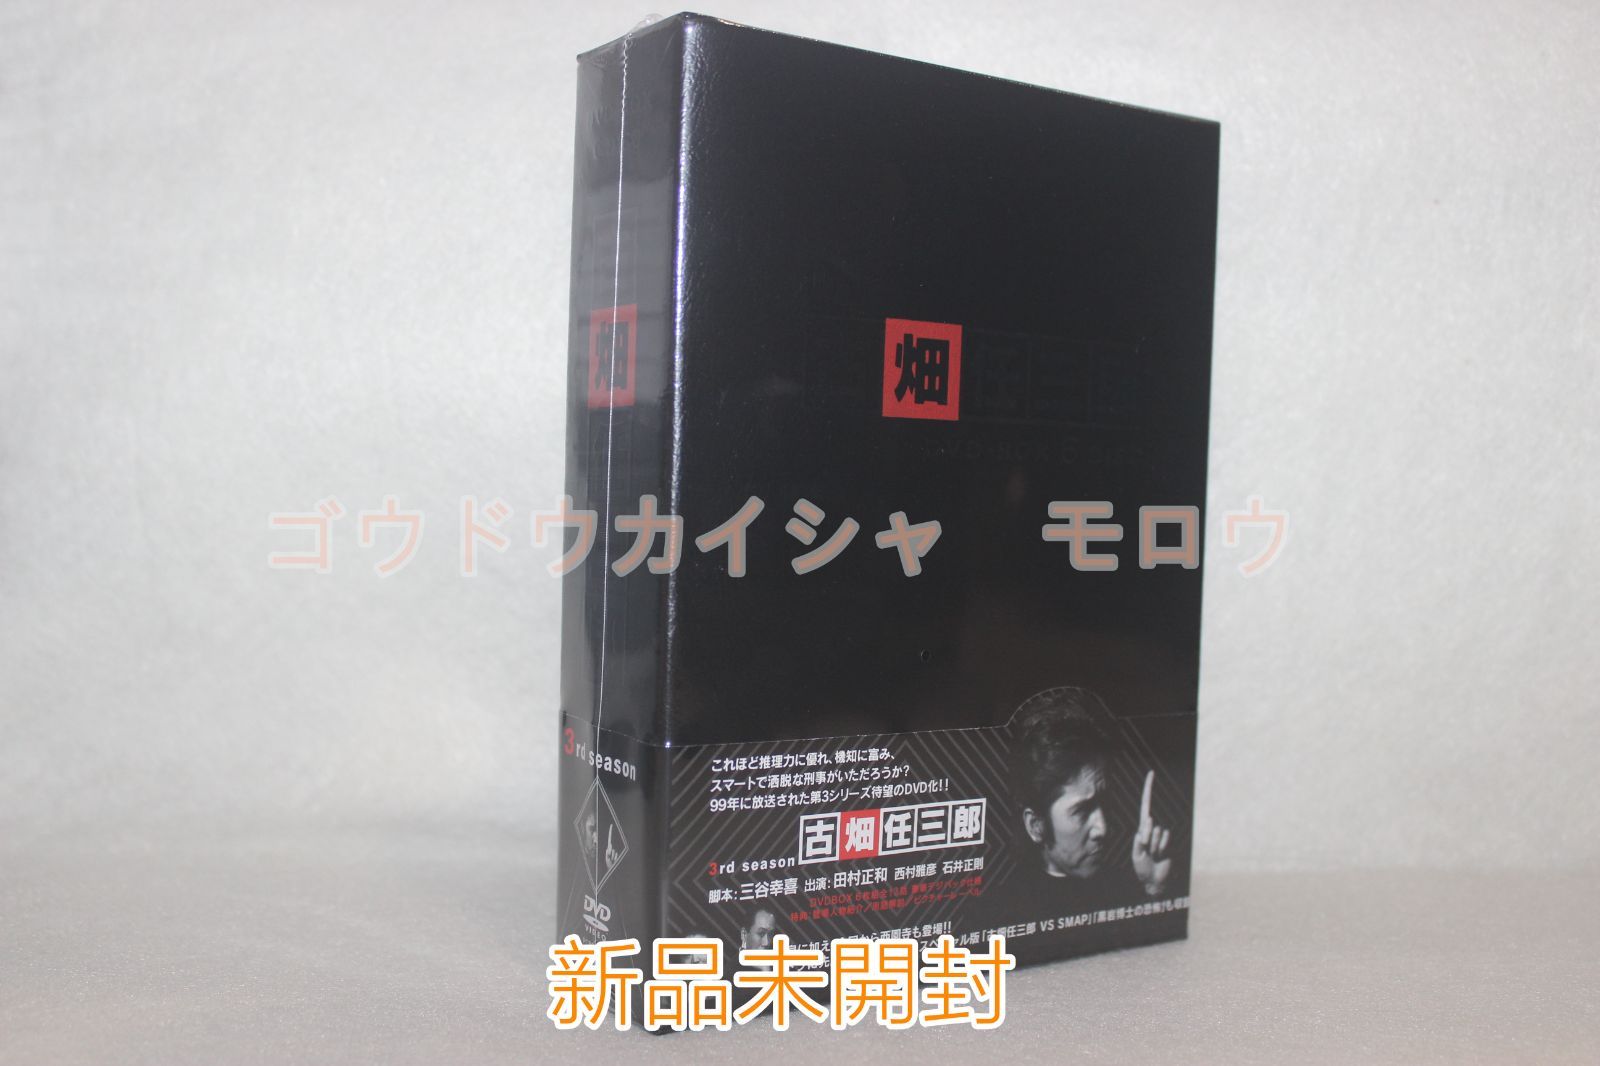 新品未開封」古畑任三郎 3rd season DVD-BOX 6枚組 - メルカリ